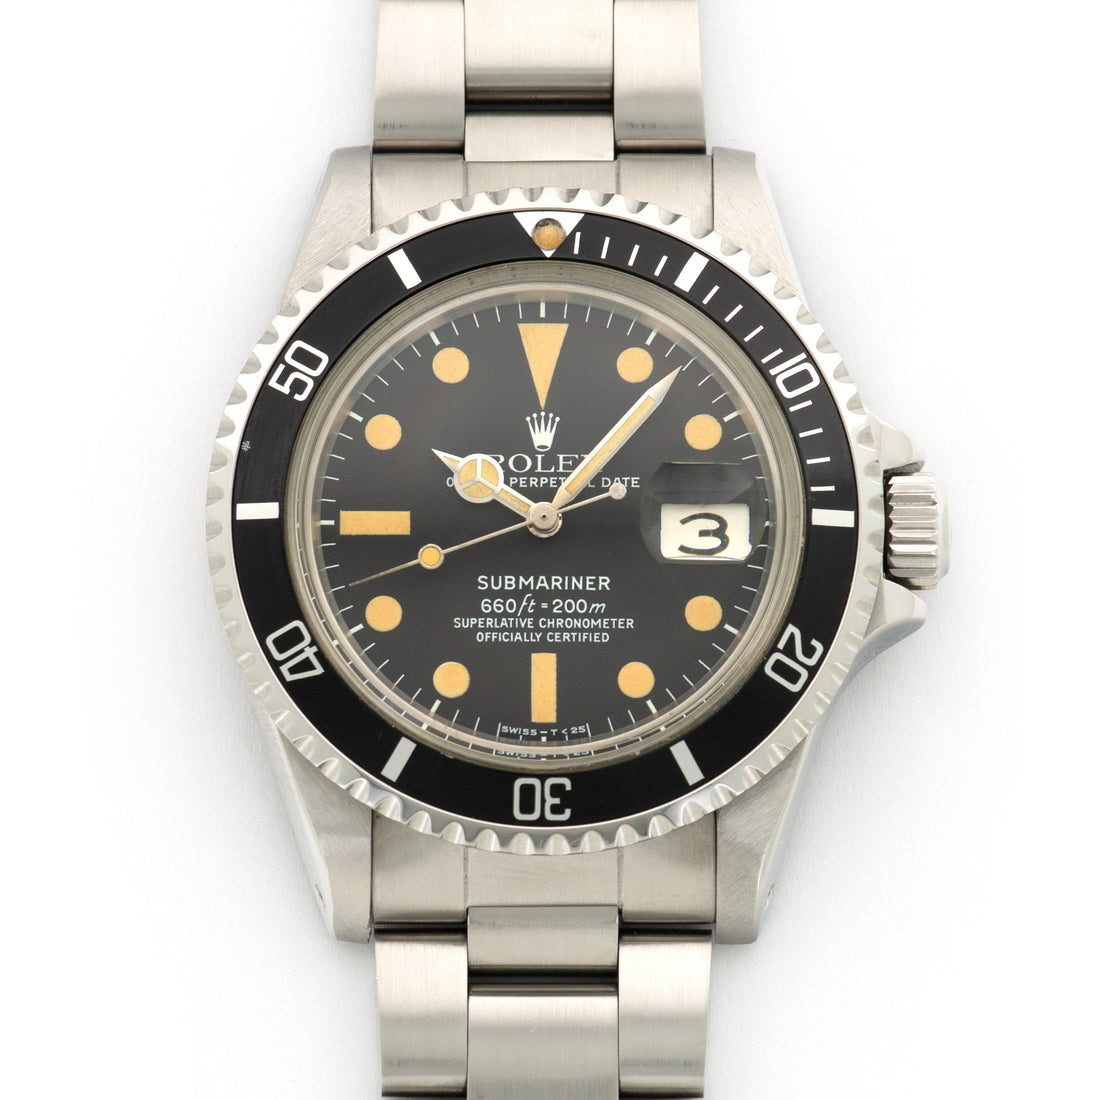 Rolex Submariner Watch Ref. 1680